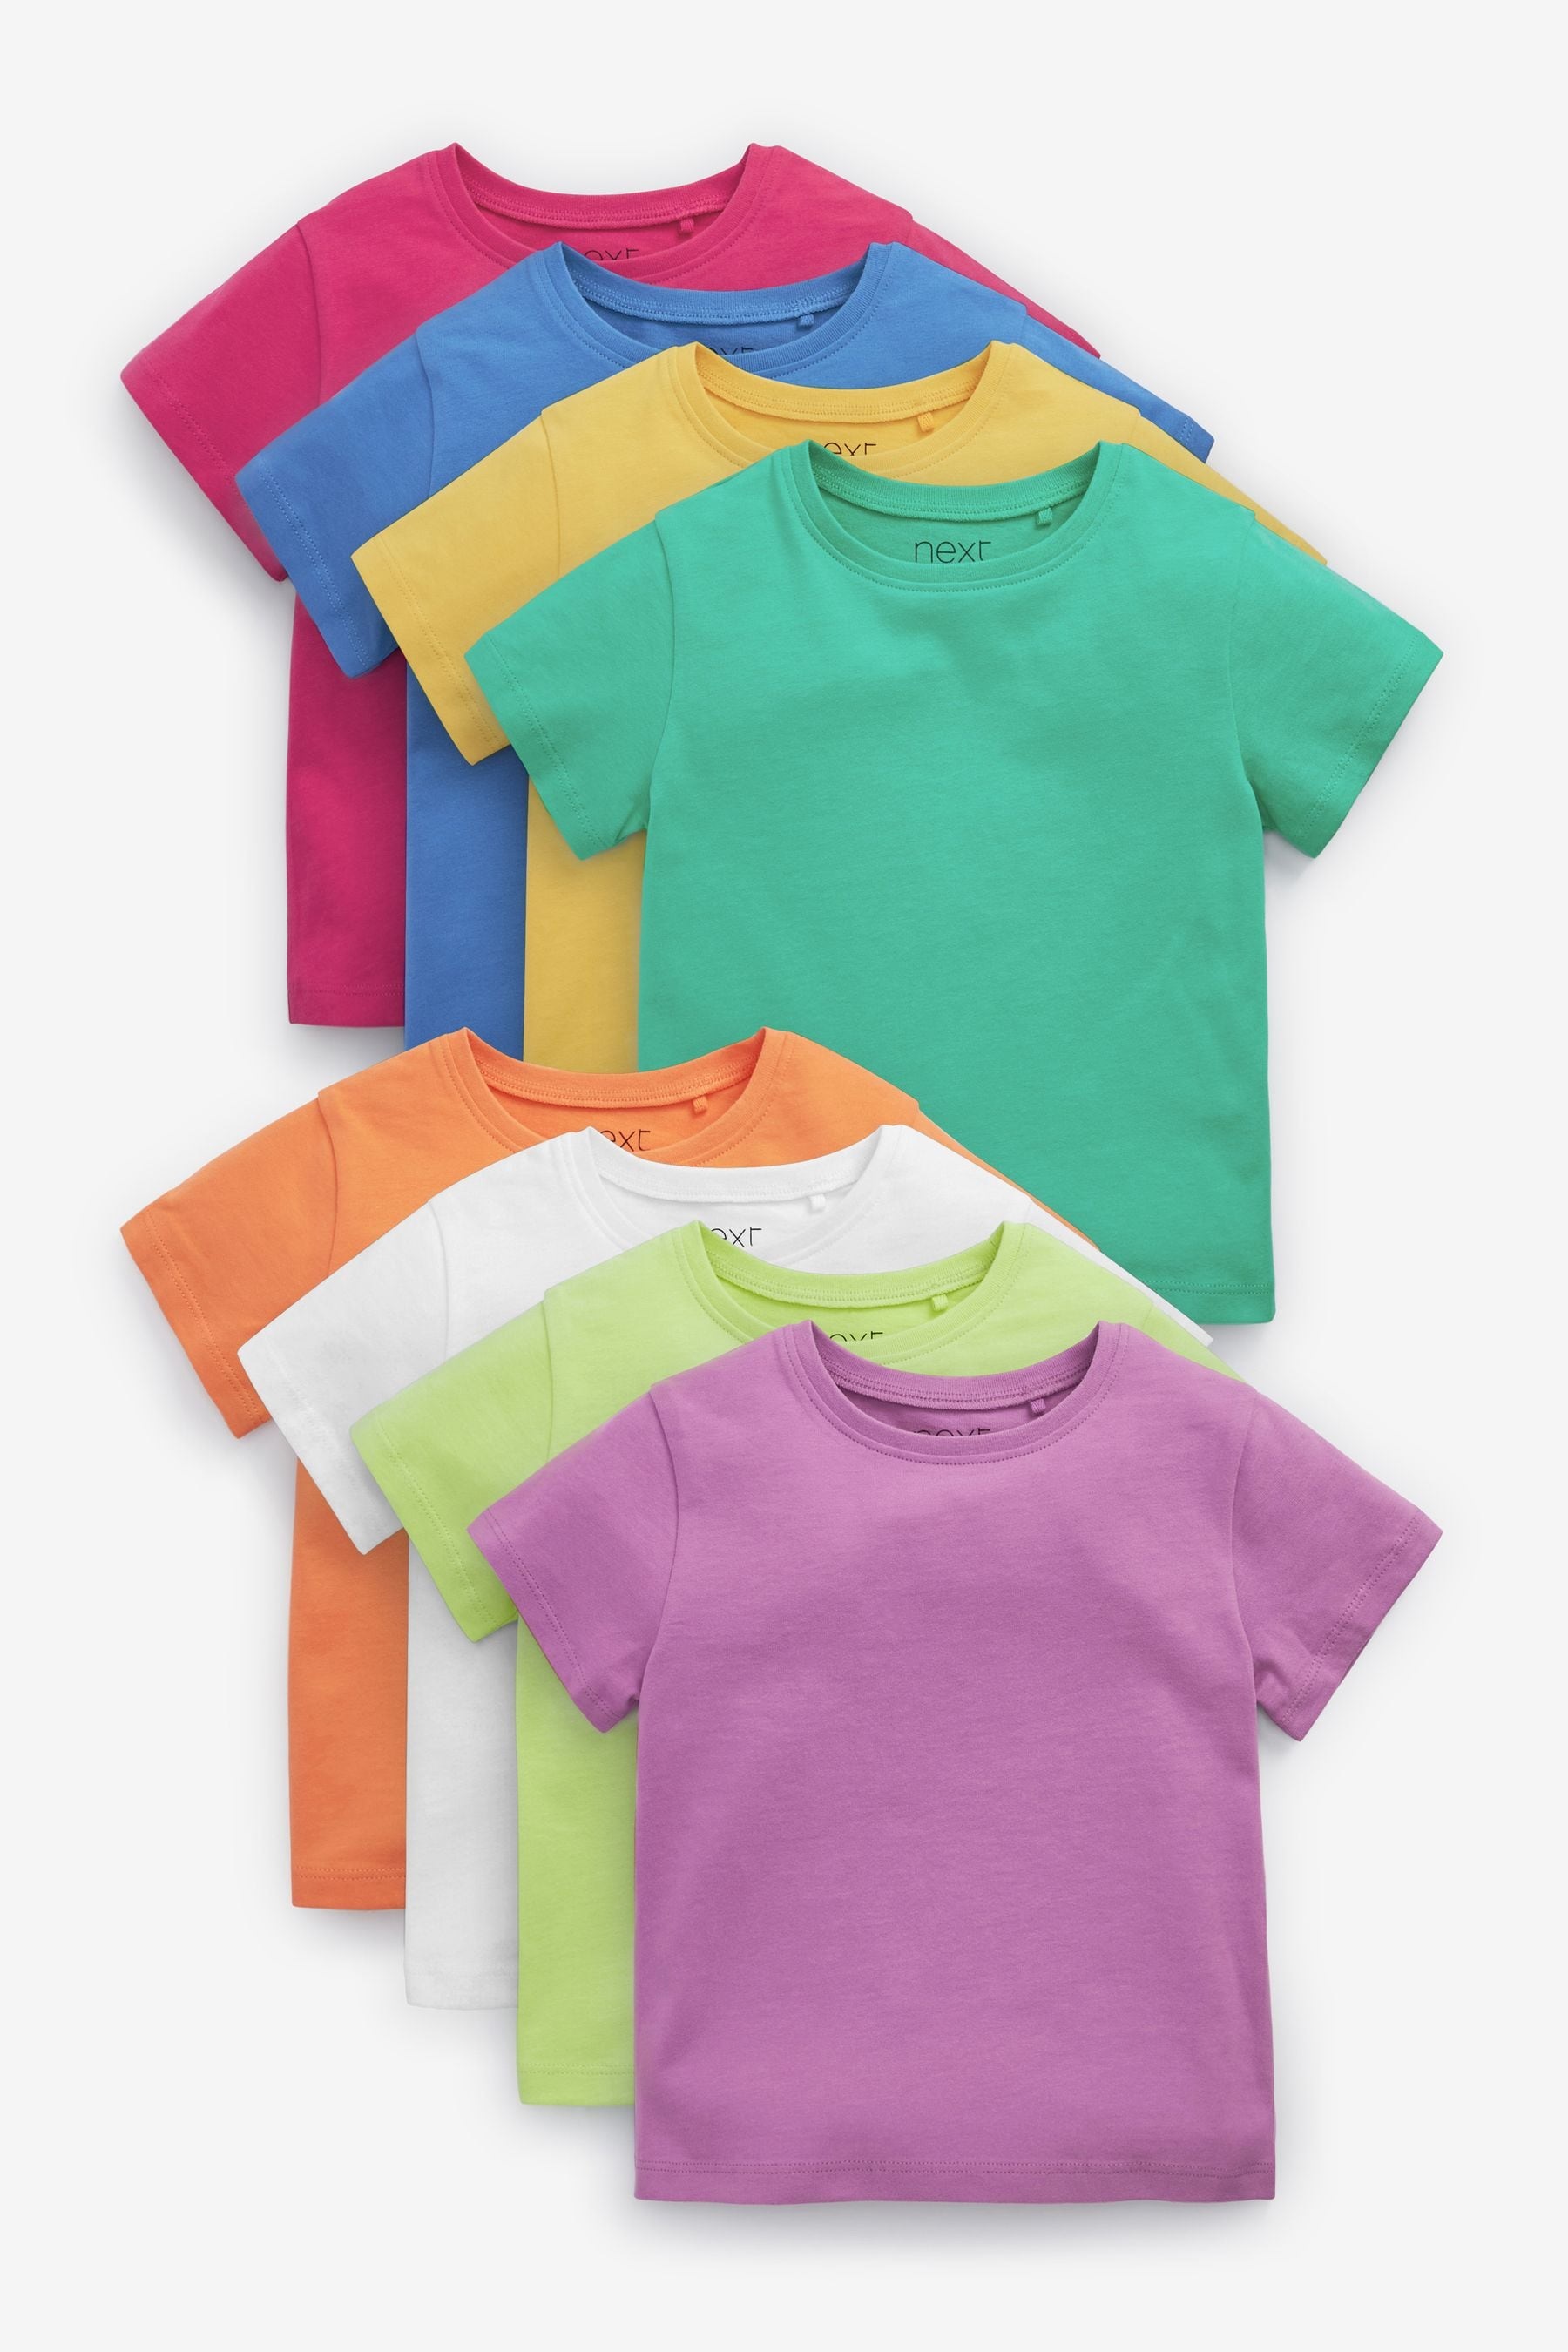 חולצה טריקו צבעונית לילדים מידות 4-18, 165 גרם. 